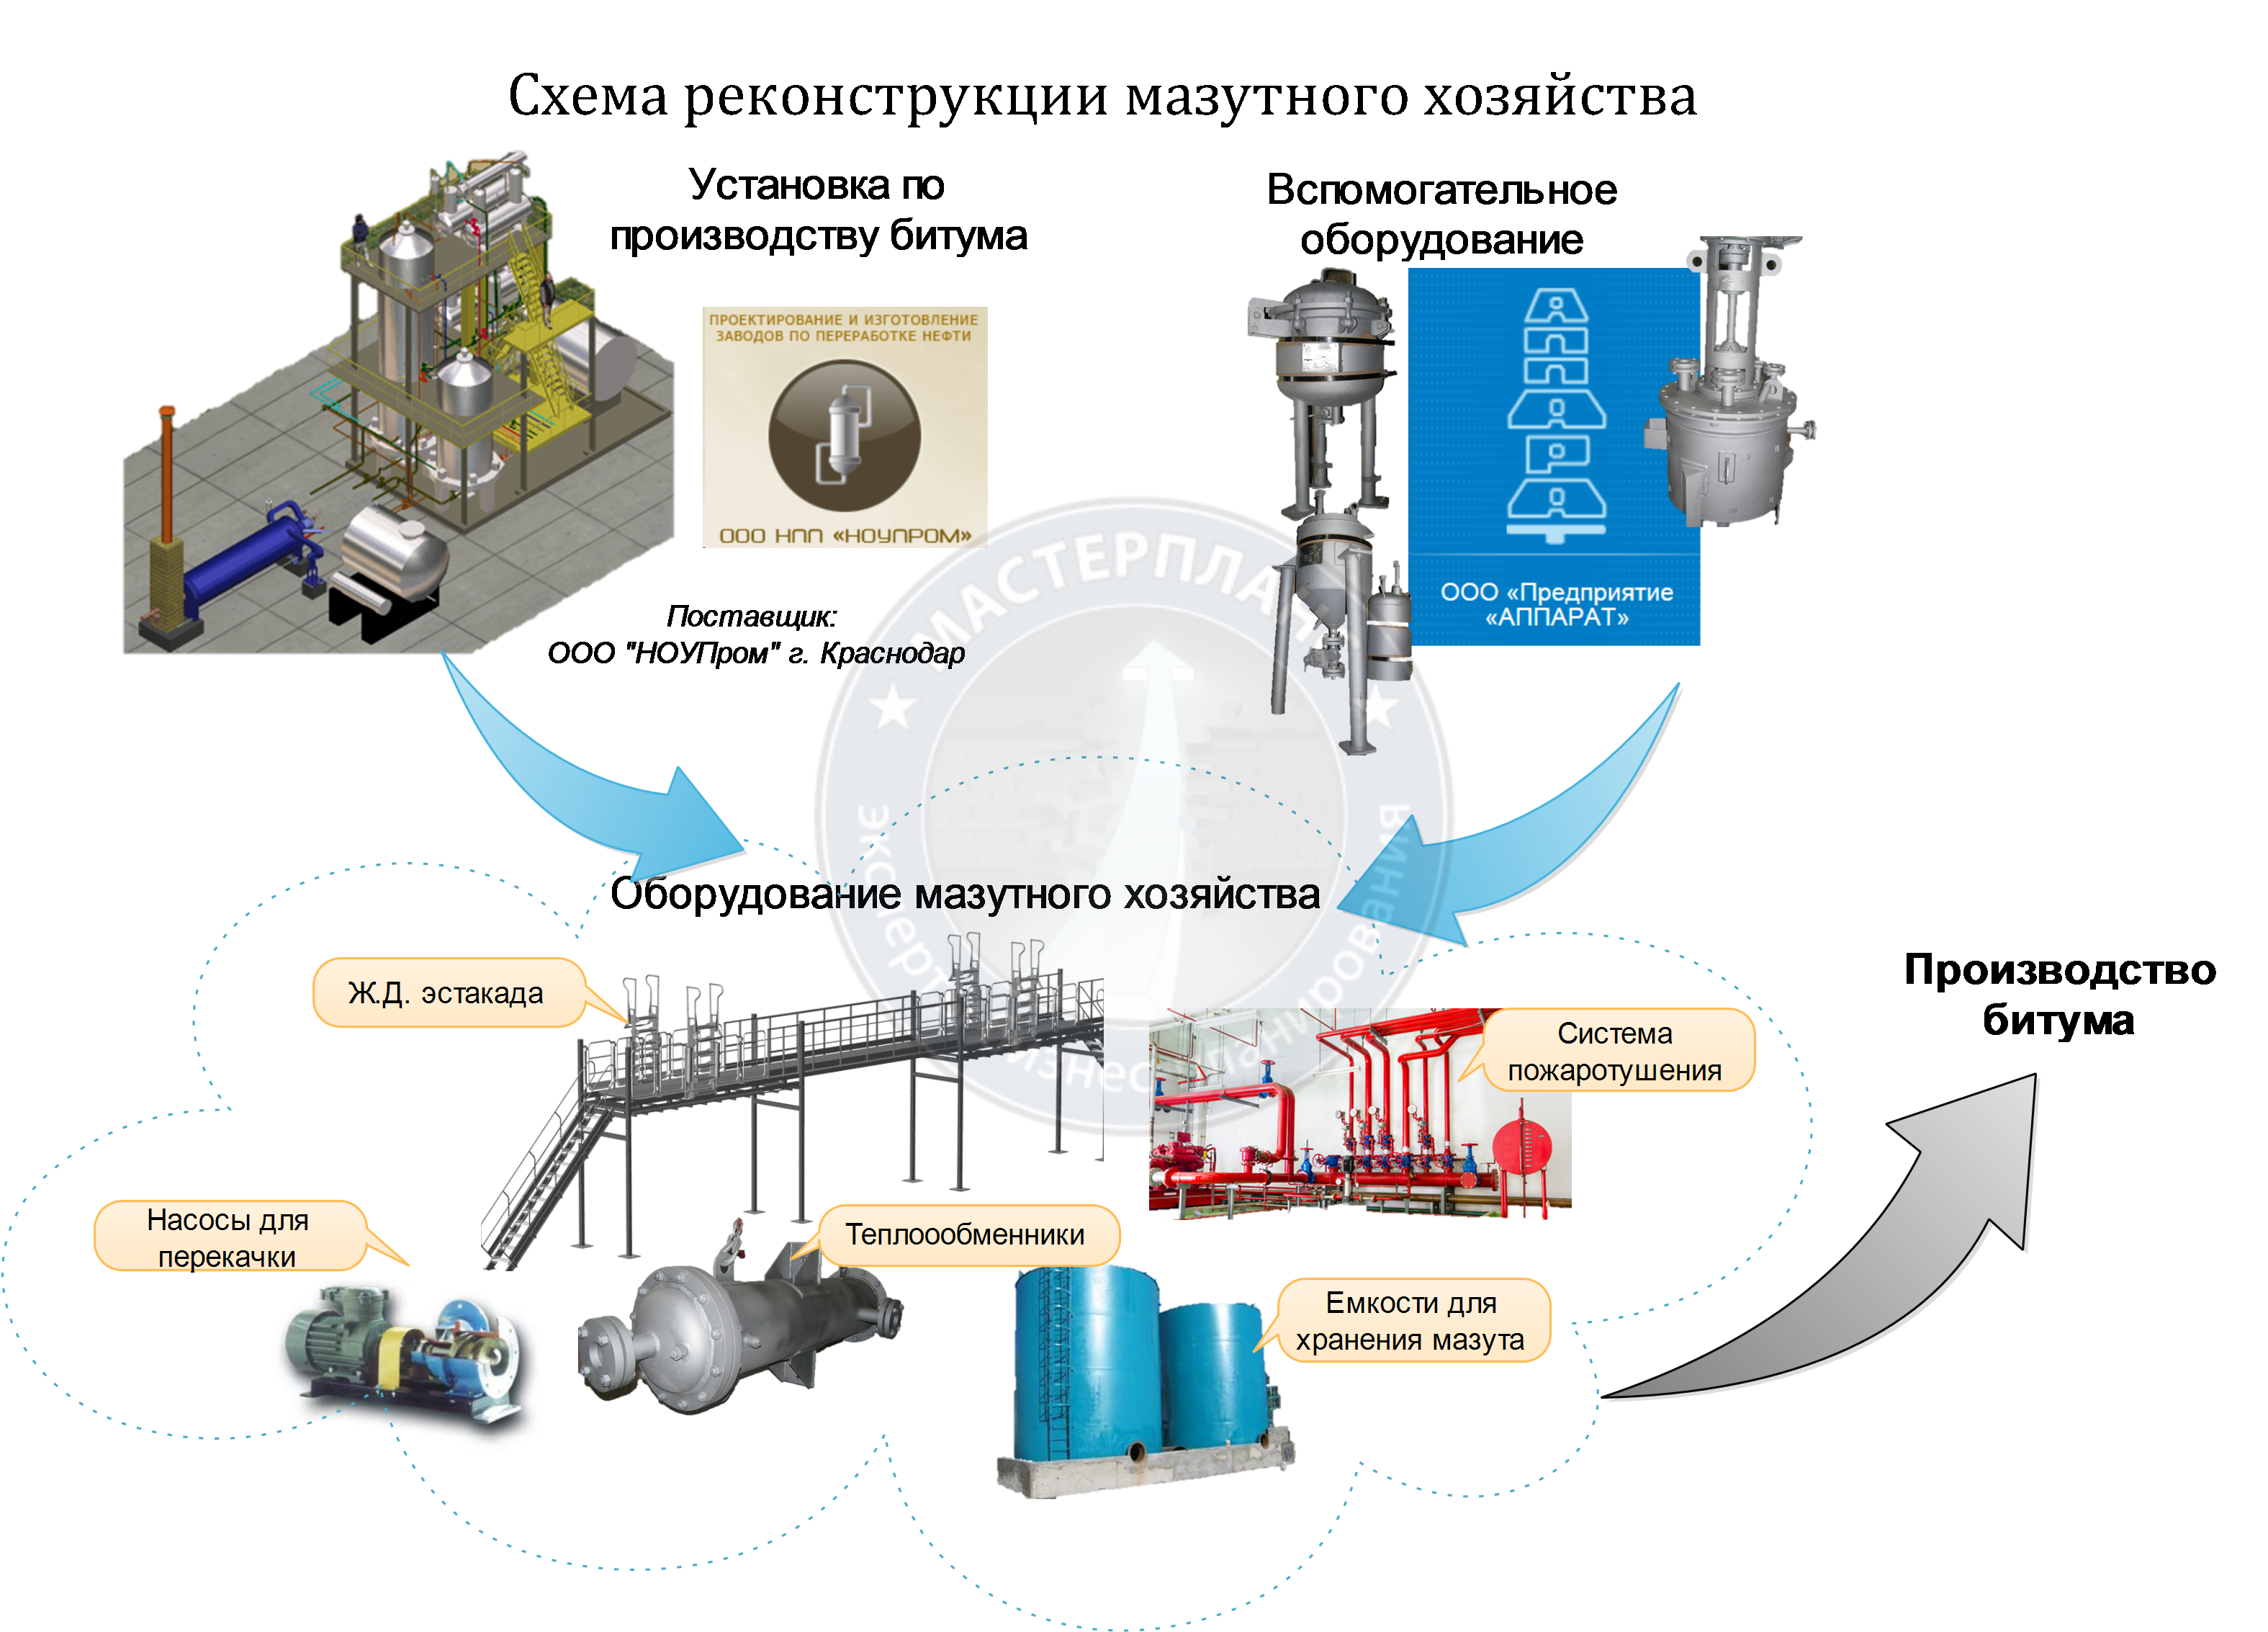 Описание технологического процесса производства битума Основы хранения битумной смеси Особенности фасованного материала Возможности утилизации и переработки битумных отходов